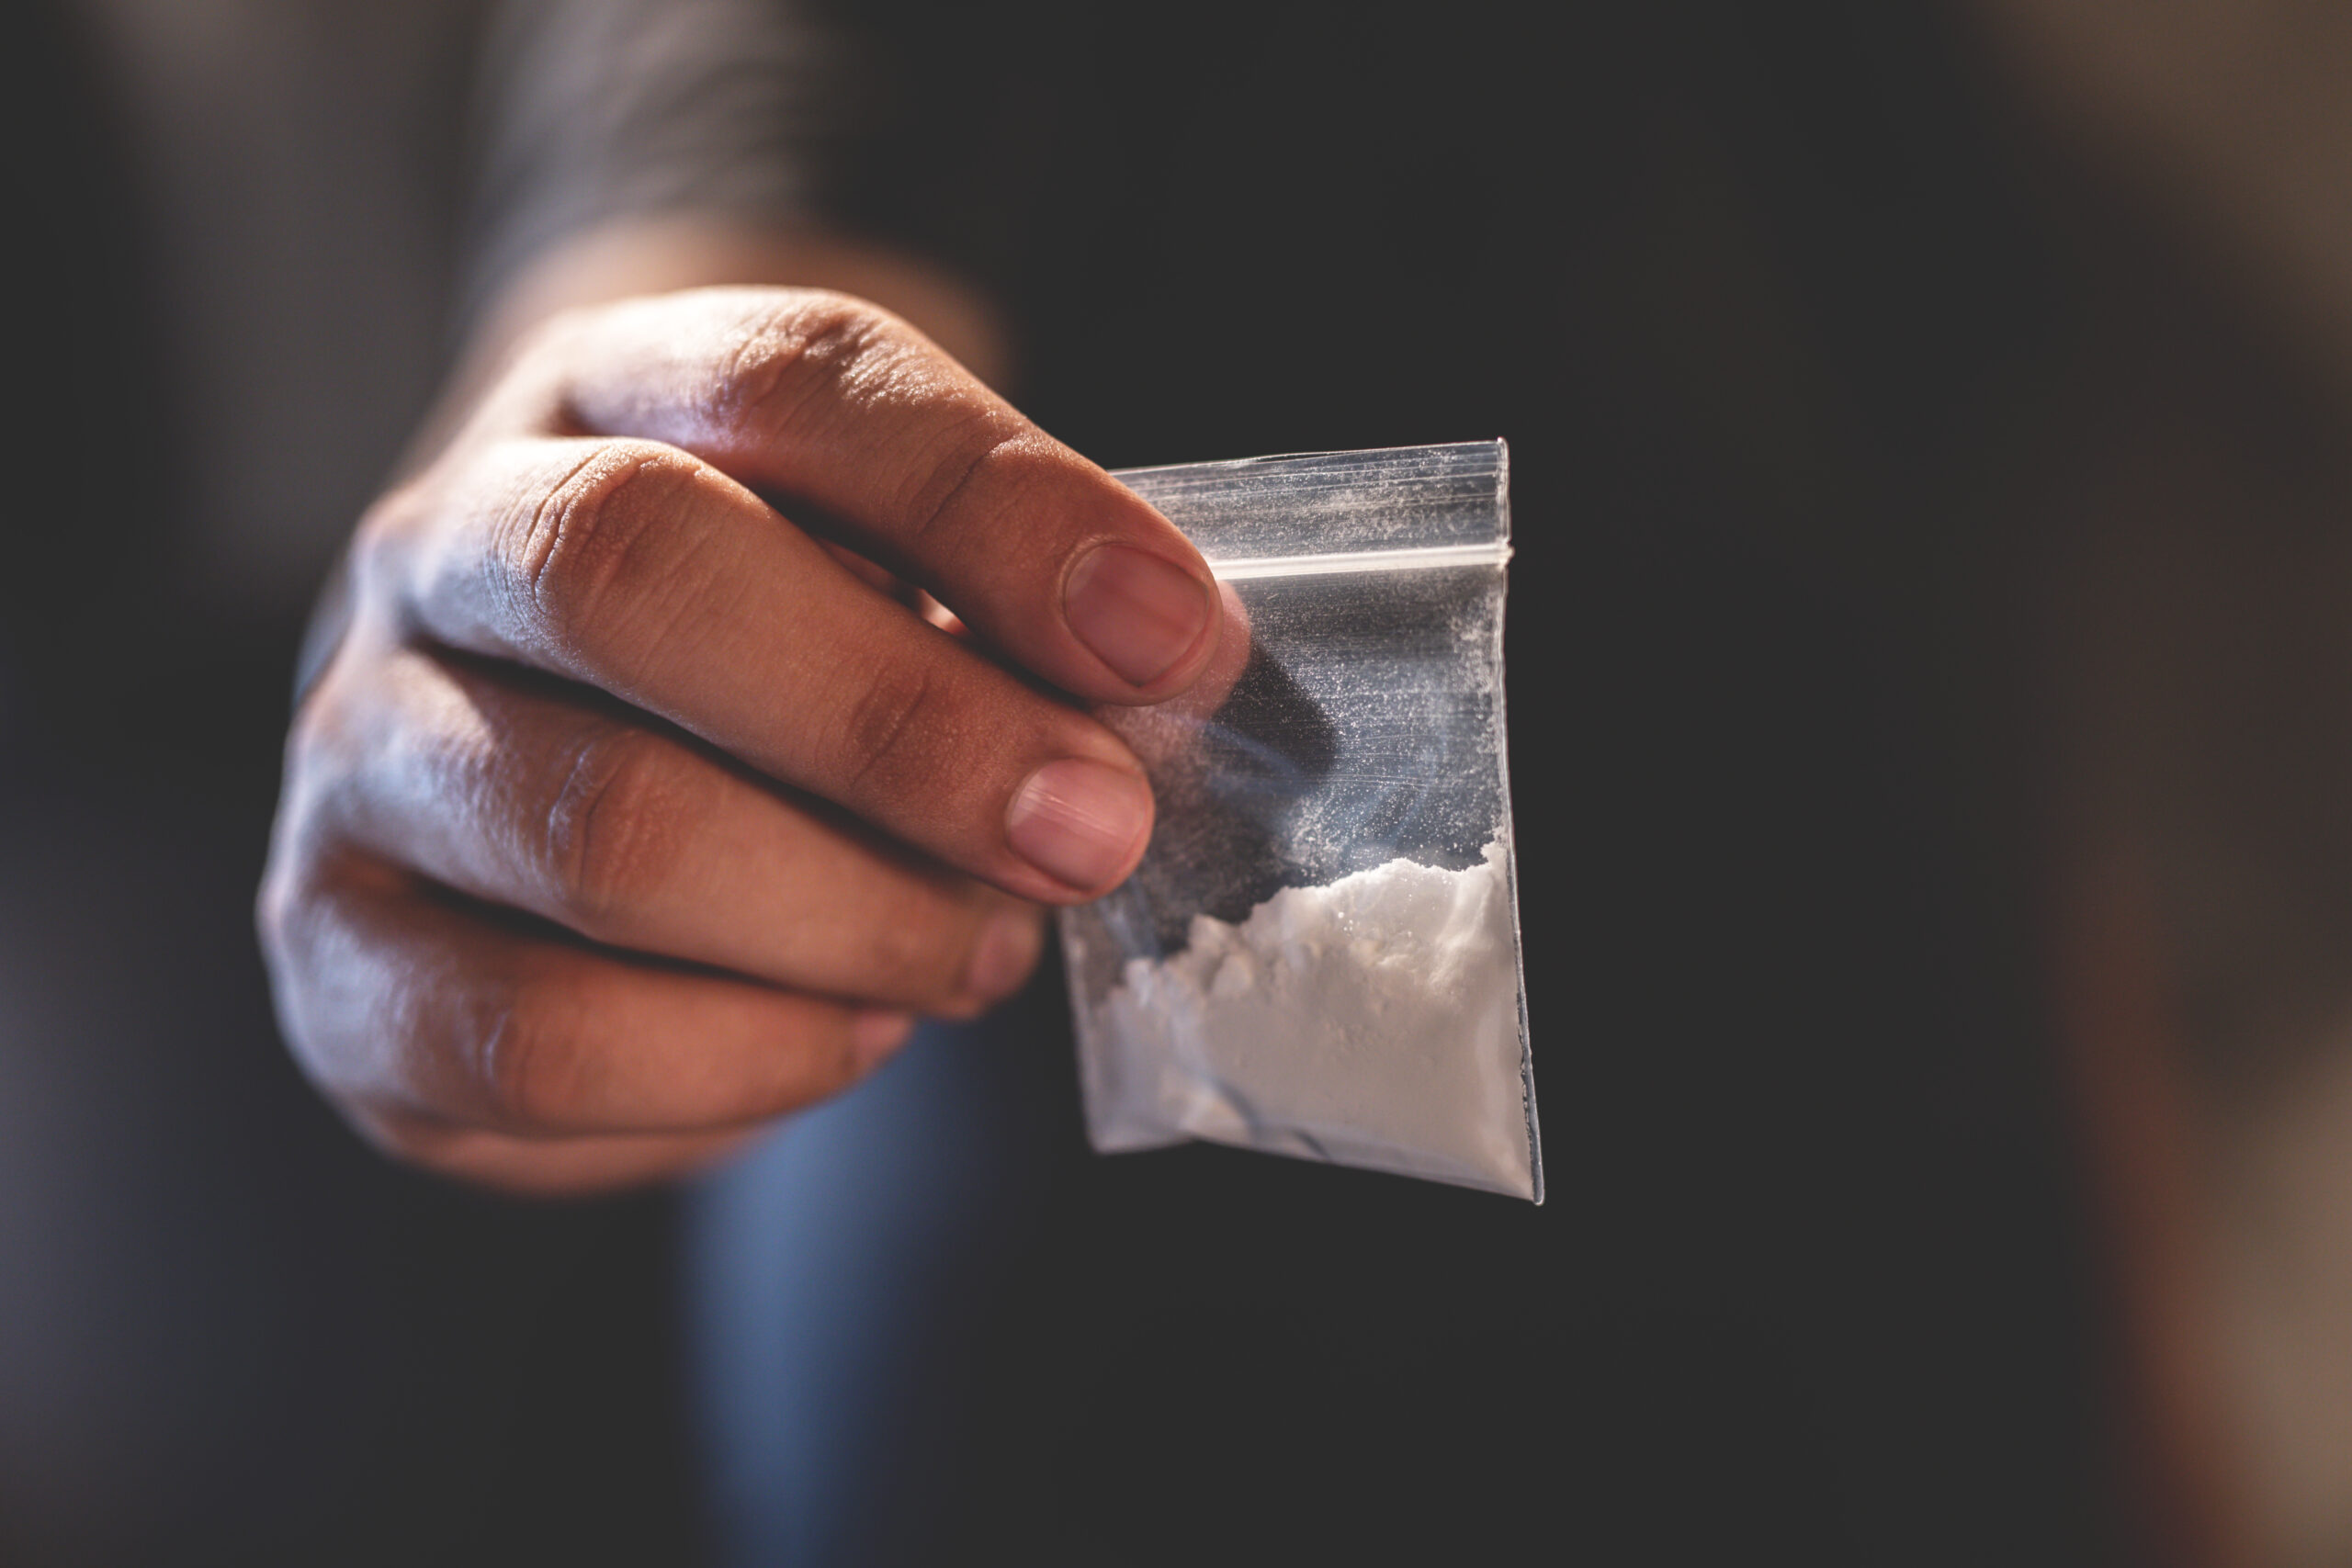 La cocaína, la sustancia de mayor consumo entre los usuarios de 'Proyecto Hombre' Ontinyent El Periódico de Ontinyent - Noticias en Ontinyent